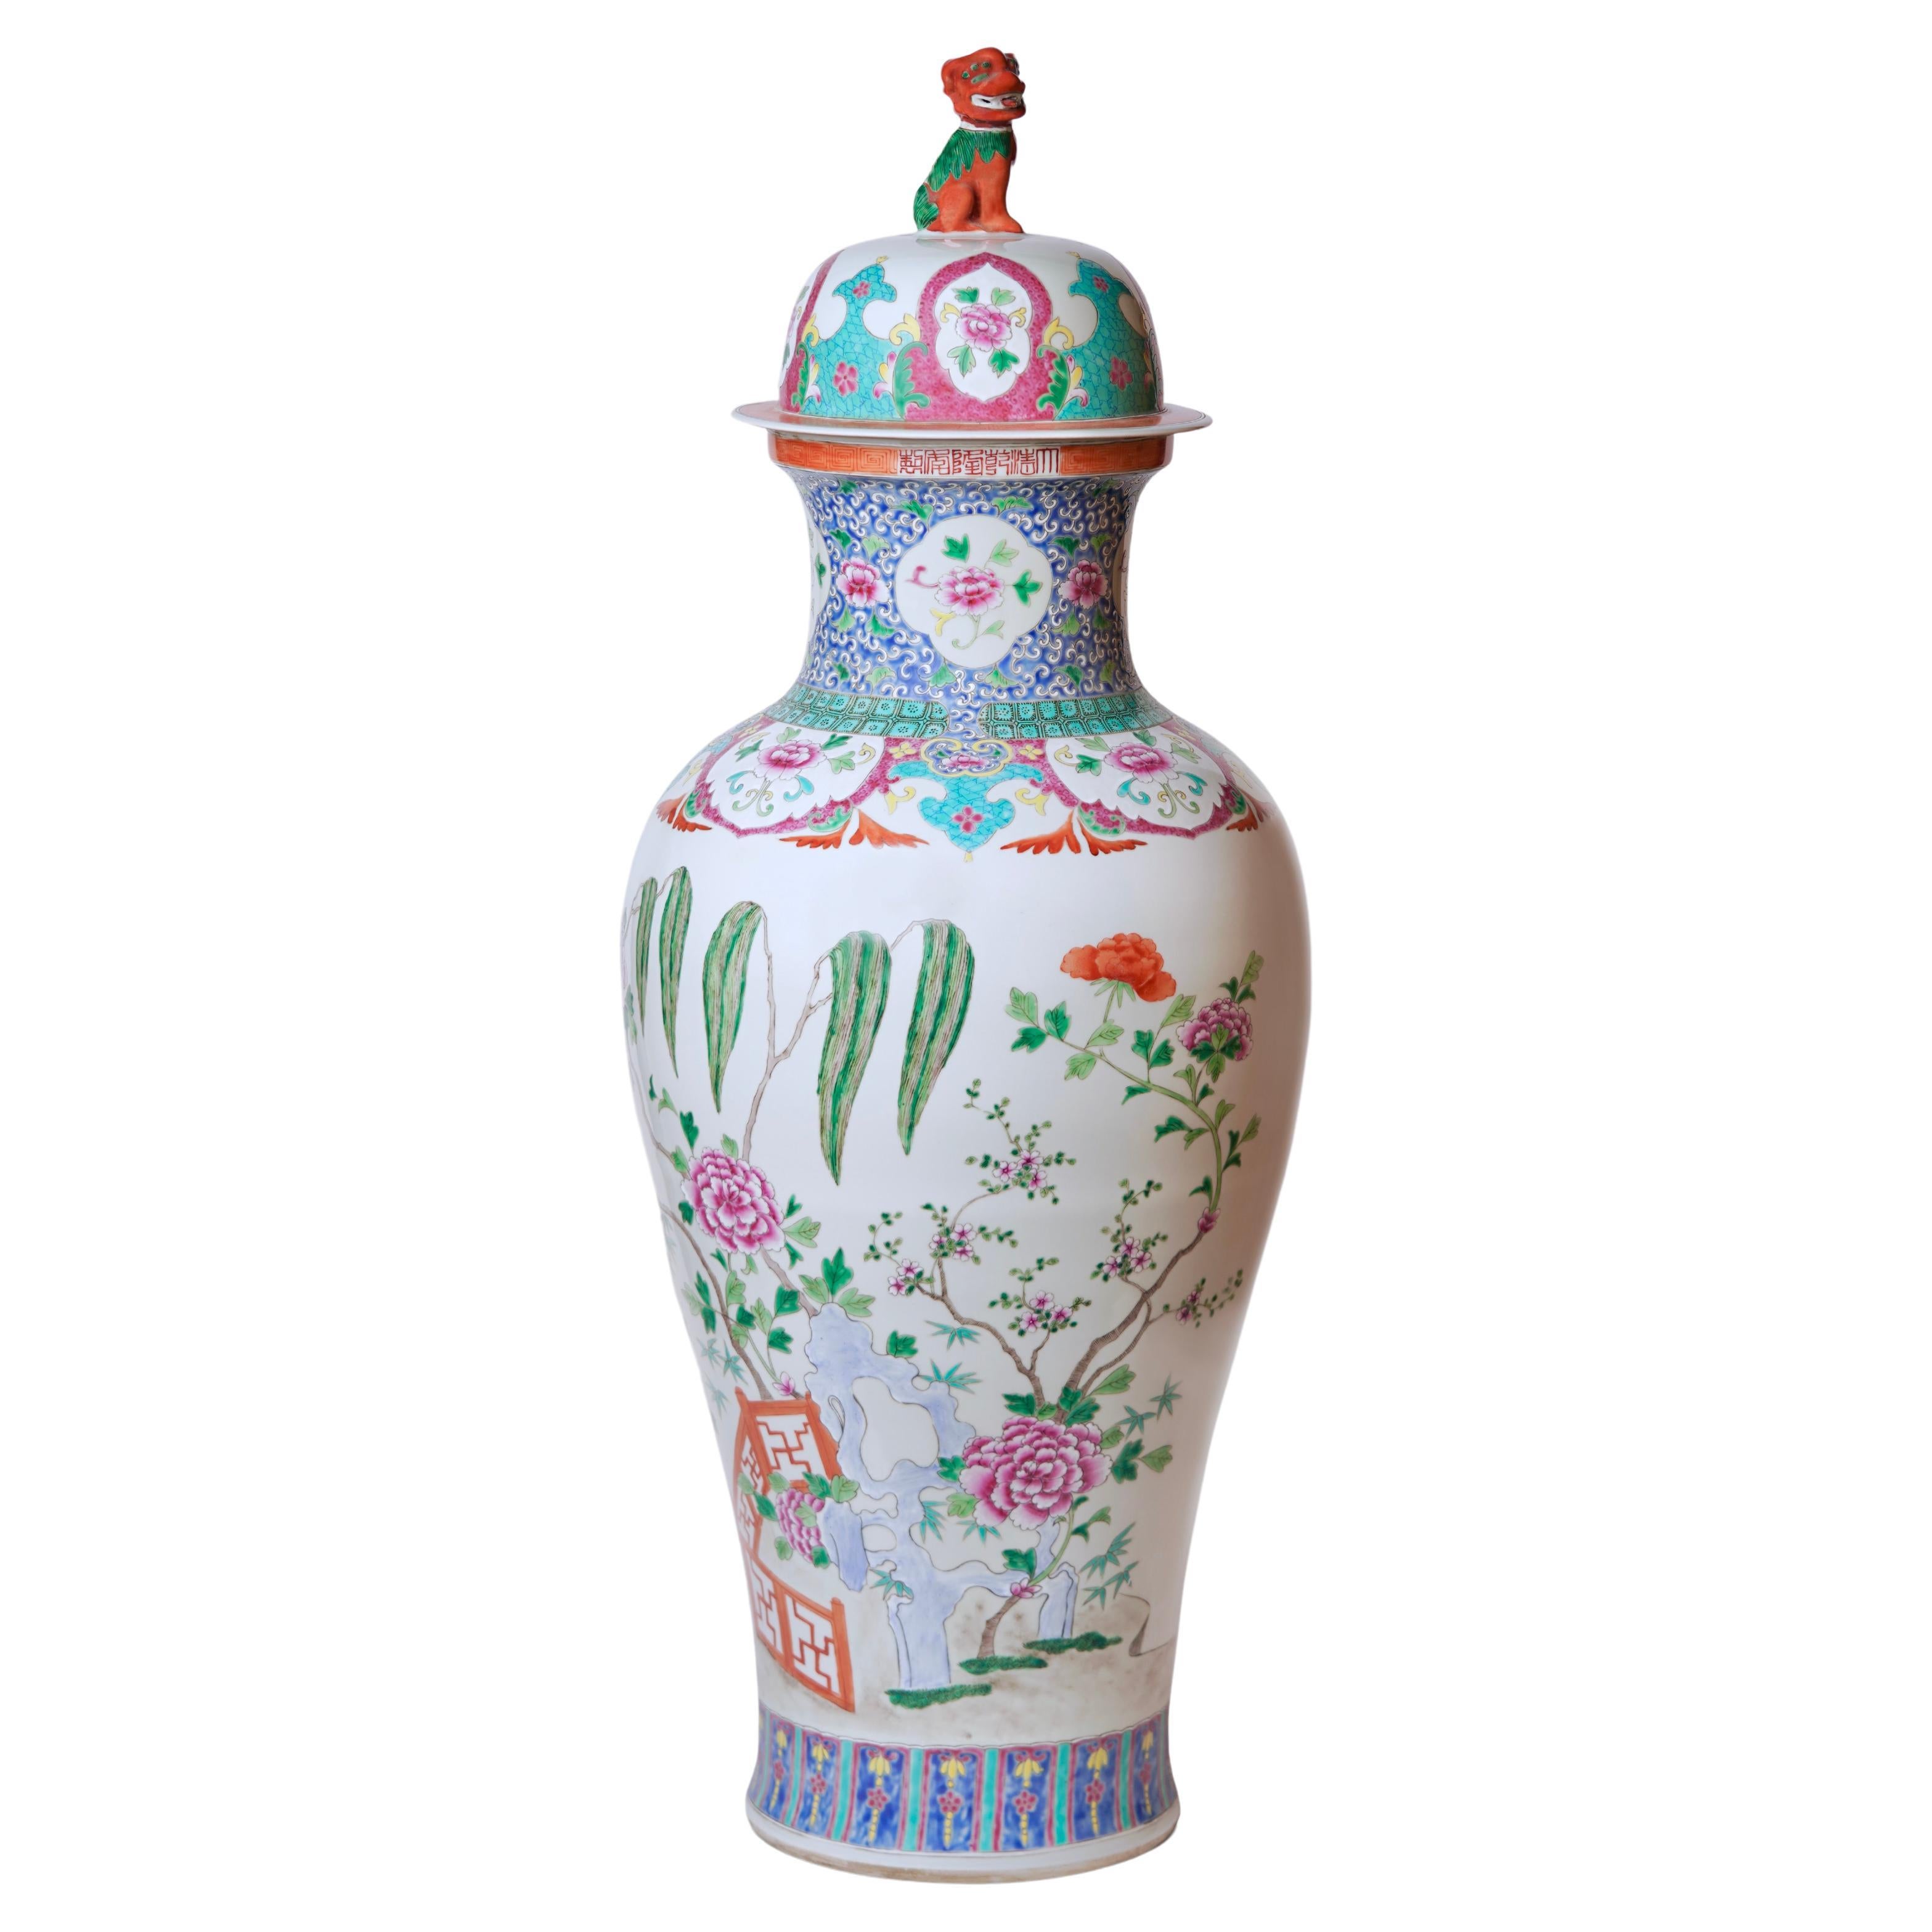 Unique Vintage Floral Landscape Famille Rose Porcelain Floor Vase For Sale